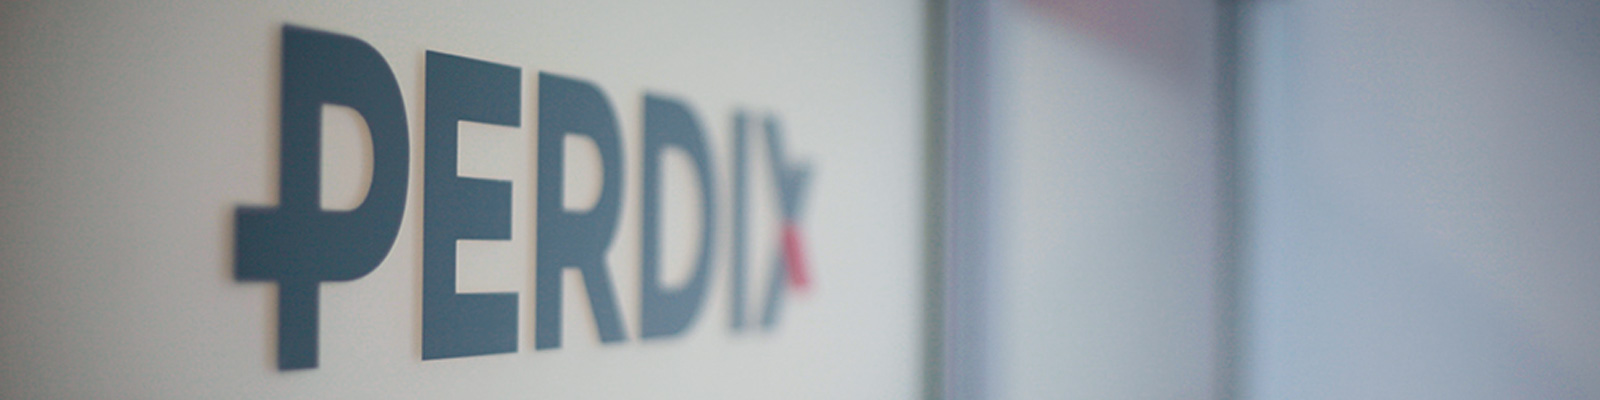 Perdix-Logo_Schriftzug